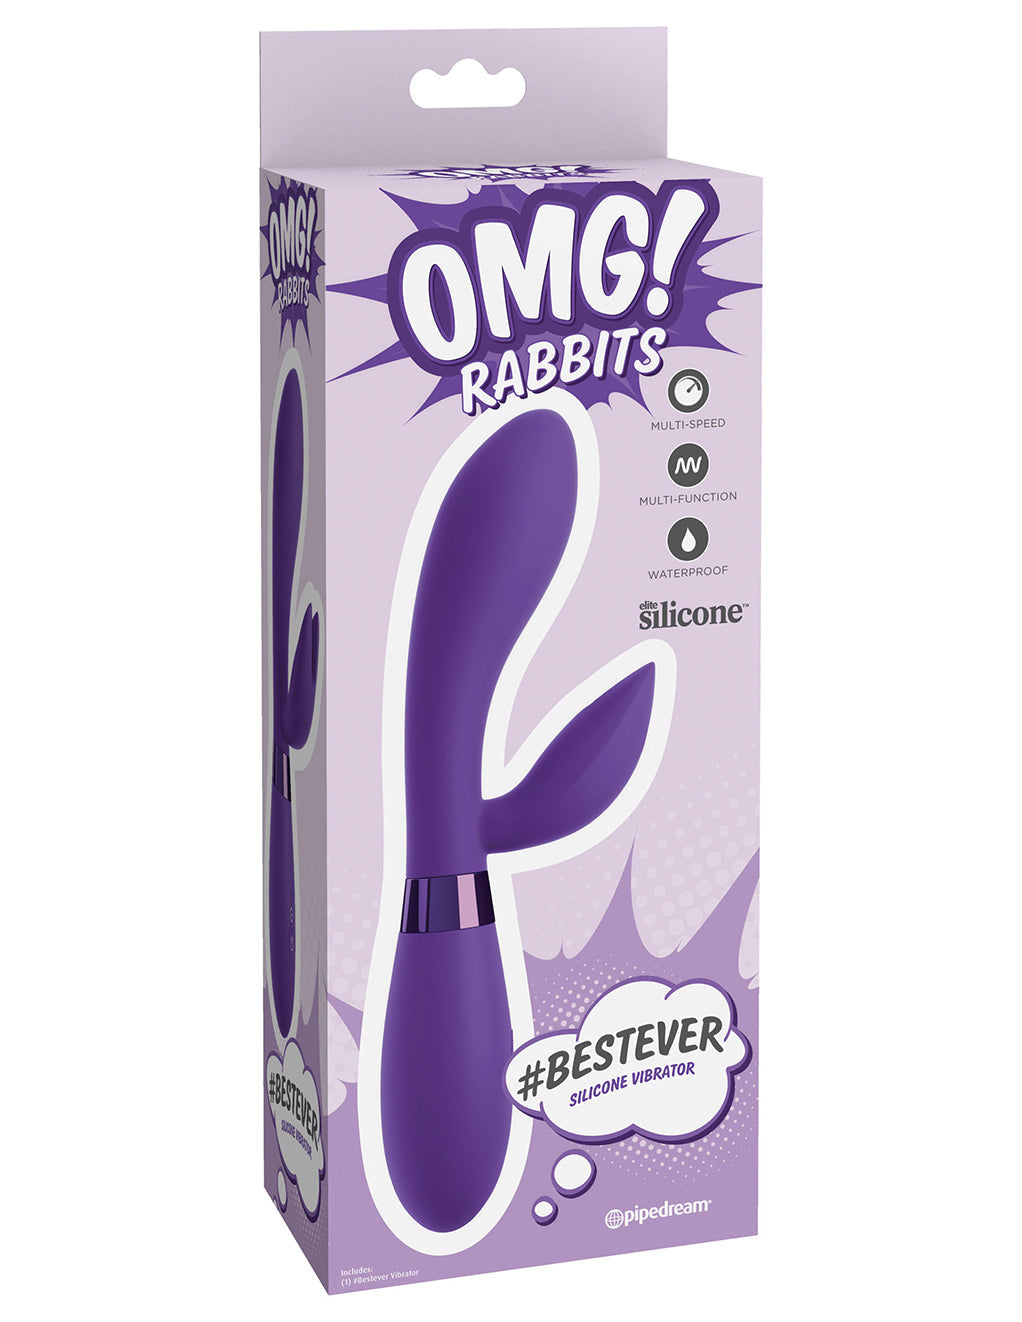 OMG! Rabbits #Bestever Vibrator- Package